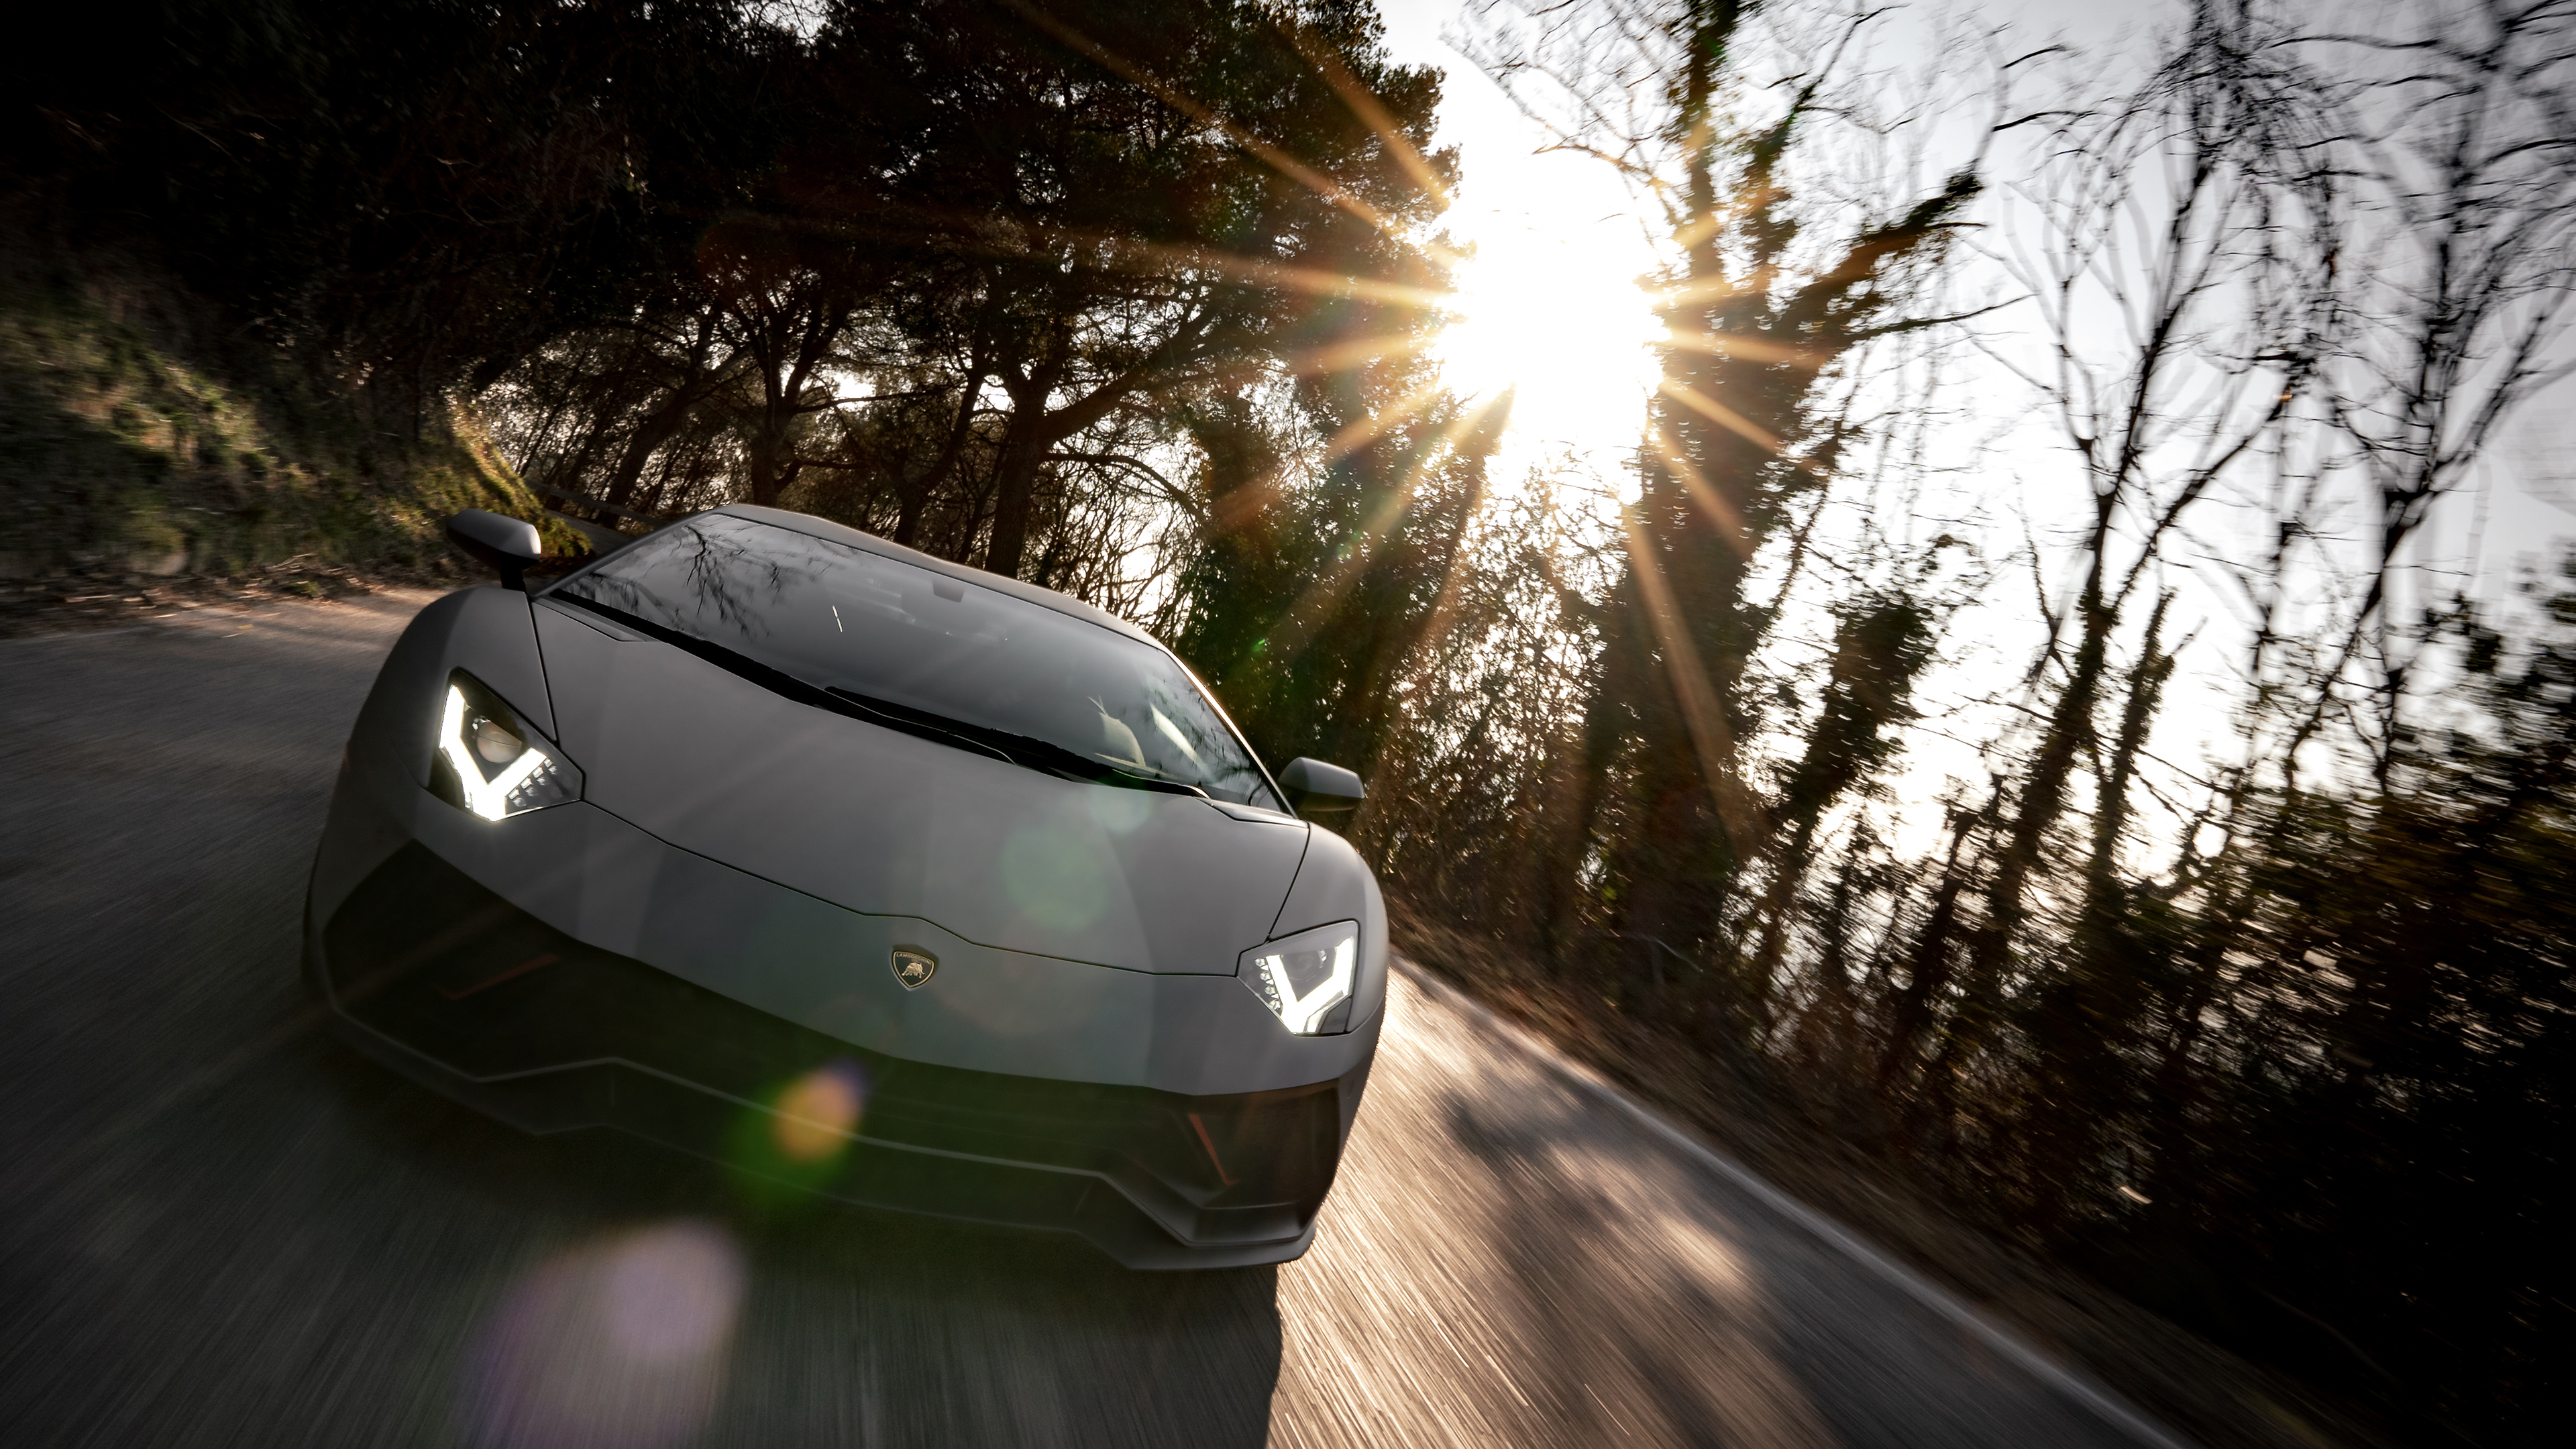 Lamborghini Aventador S Resolution HD Cars 4K Imag iPhone Wallpapers  Free Download